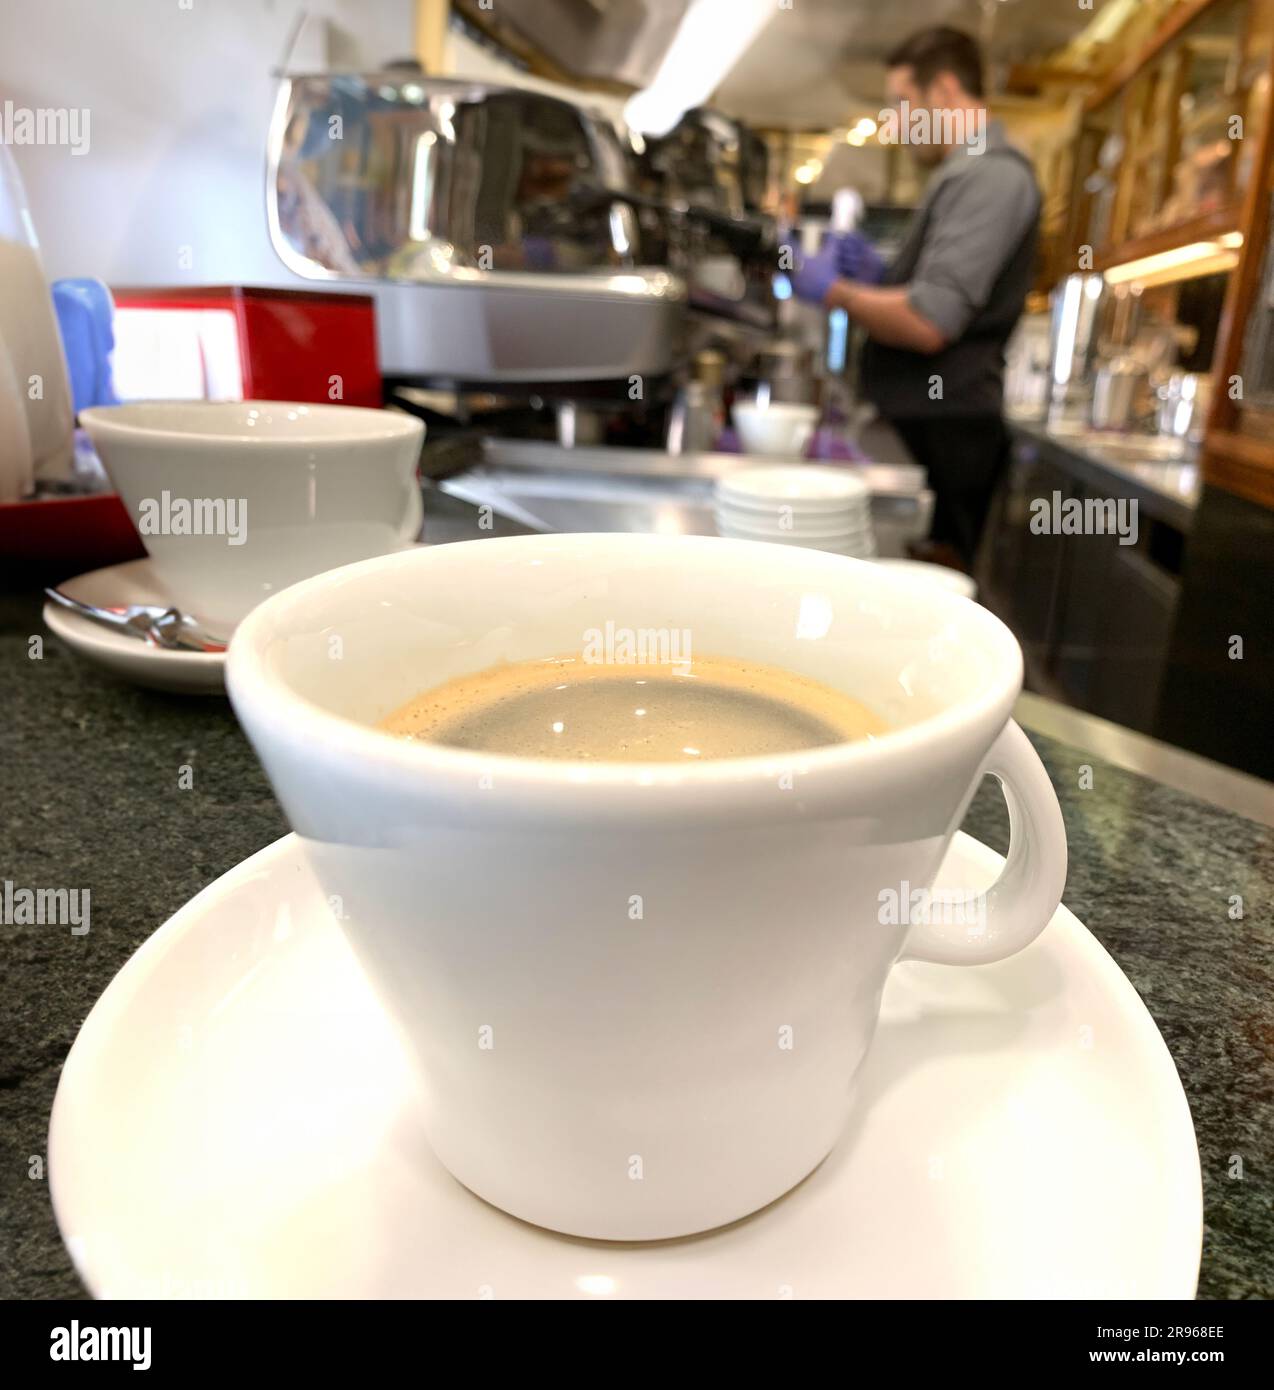 Un gros plan captivant d'un café Americano fraîchement préparé dans un café italien. L'image montre un café parfaitement versé dans un styl Banque D'Images